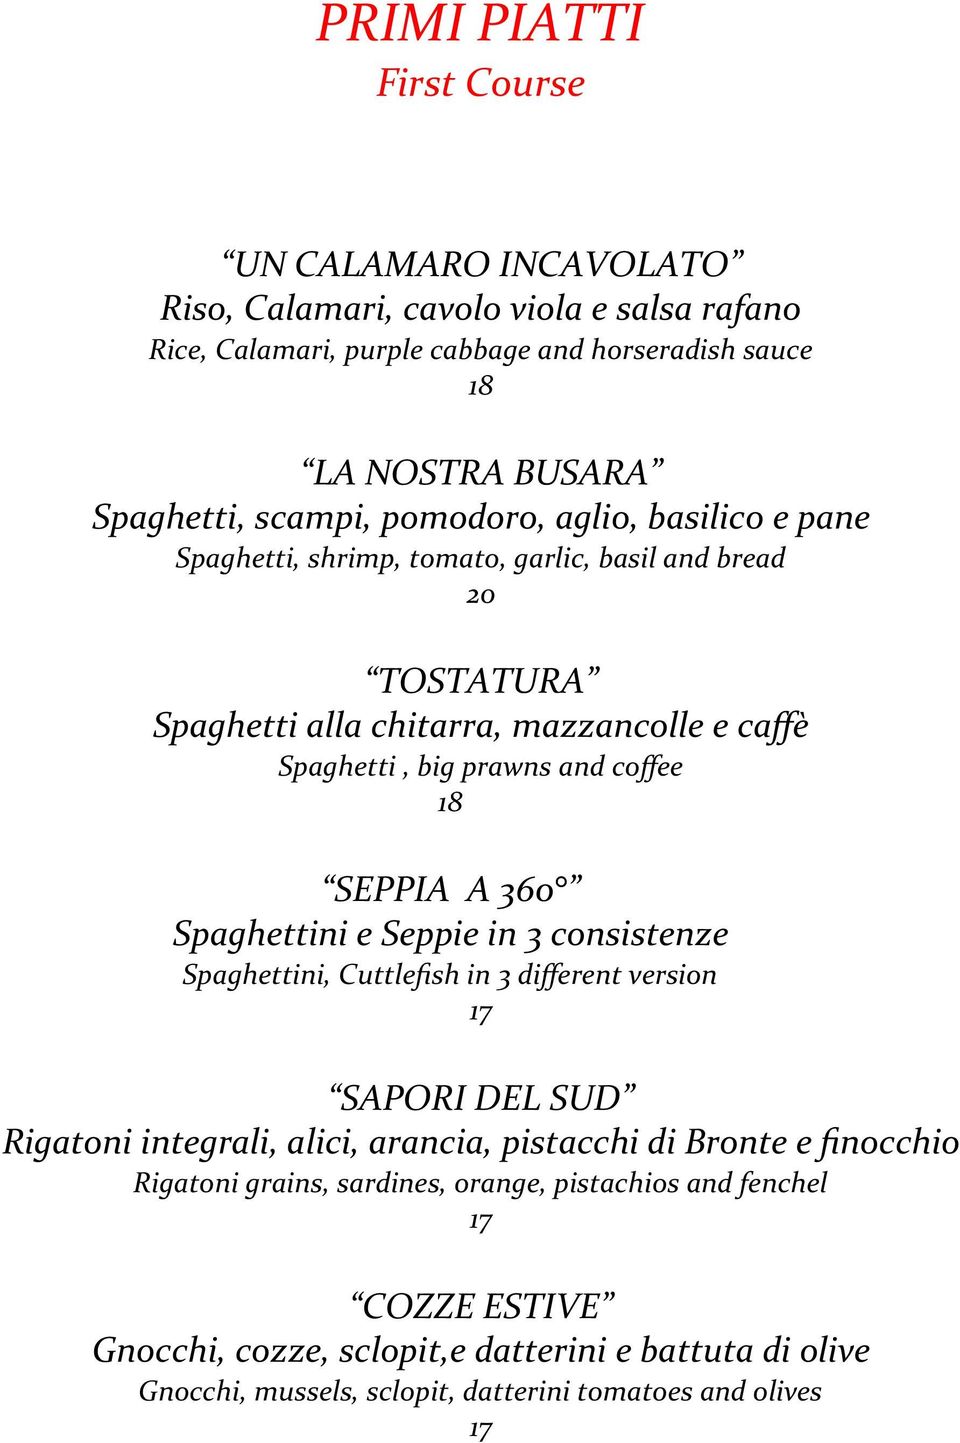 coffee SEPPIA A 360 Spaghettini e Seppie in 3 consistenze Spaghettini, Cuttlefish in 3 different version SAPORI DEL SUD Rigatoni integrali, alici, arancia, pistacchi di Bronte e